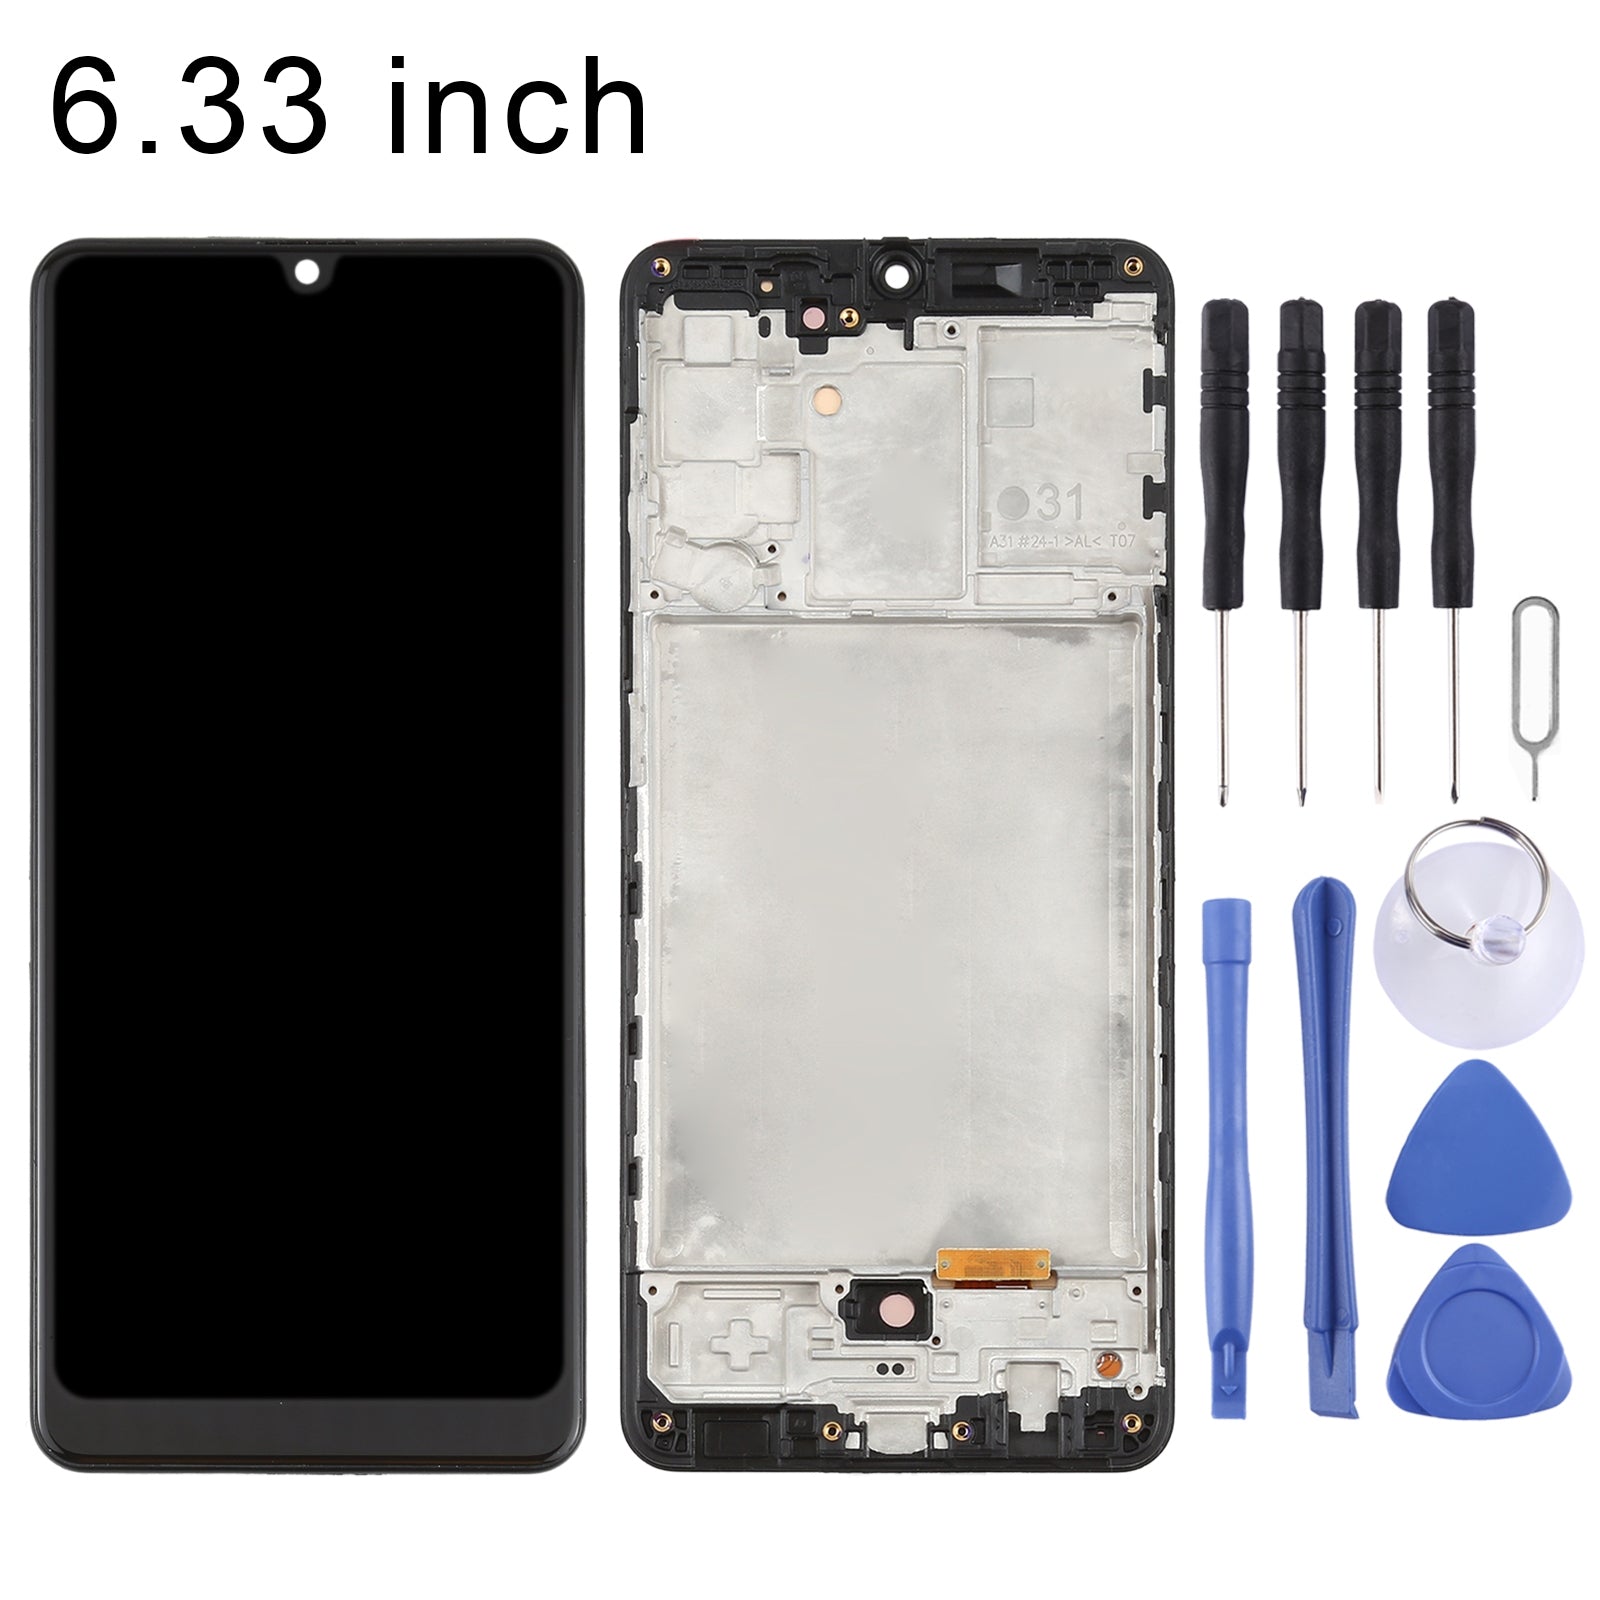 Pantalla LCD + Tactil + Marco (Oled) Samsung Galaxy A31 A315 (6.33) Negro